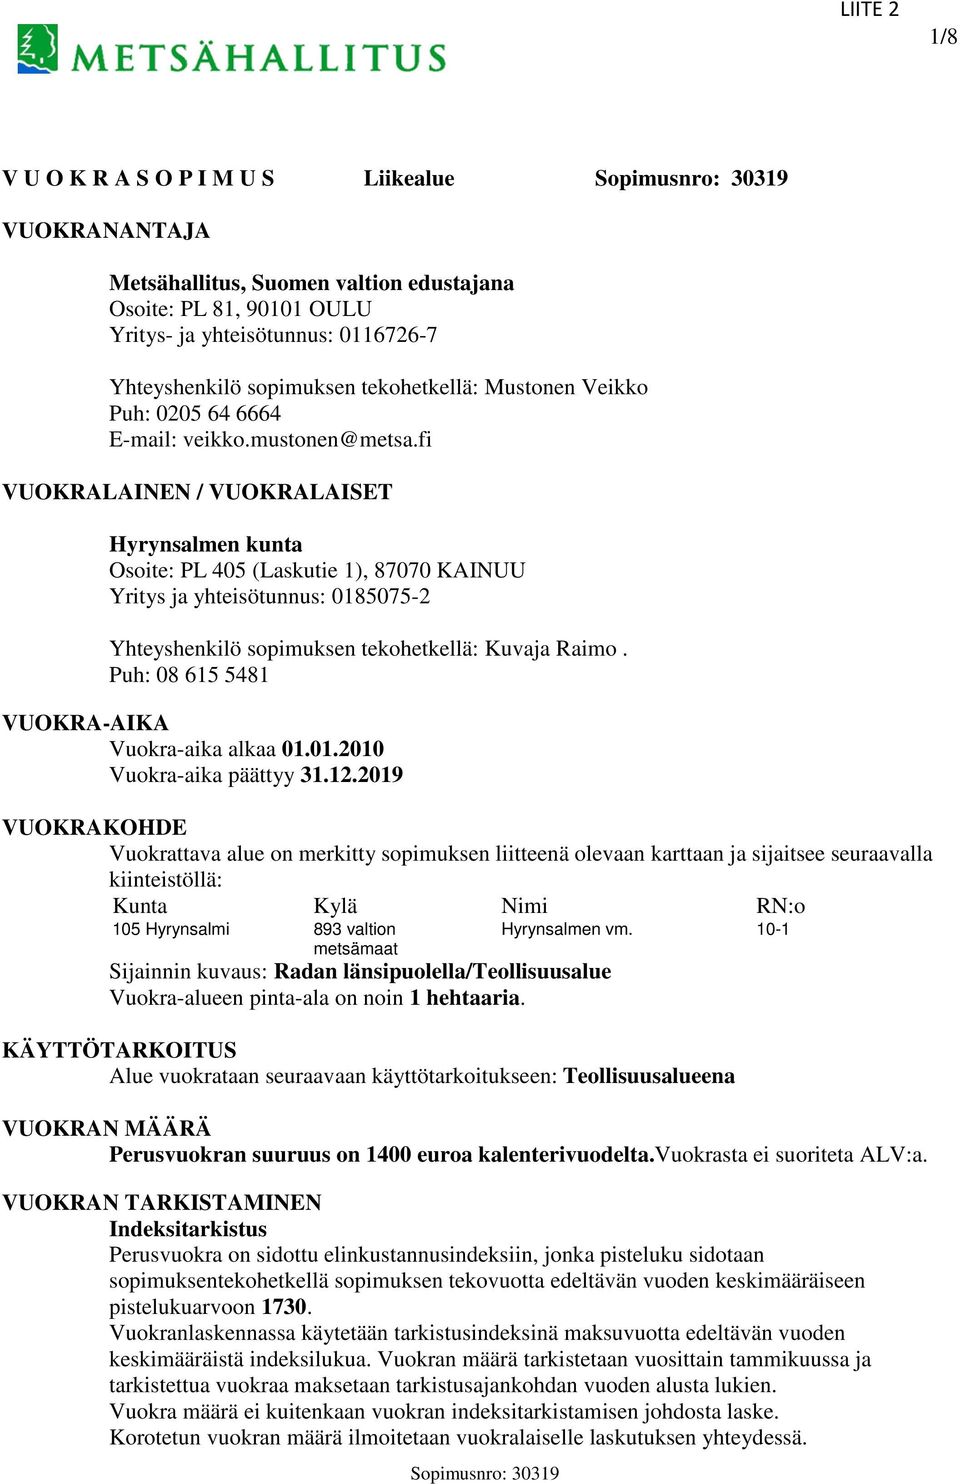 fi VUOKRALAINEN / VUOKRALAISET Hyrynsalmen kunta Osoite: PL 405 (Laskutie 1), 87070 KAINUU Yritys ja yhteisötunnus: 0185075-2 Yhteyshenkilö sopimuksen tekohetkellä: Kuvaja Raimo.